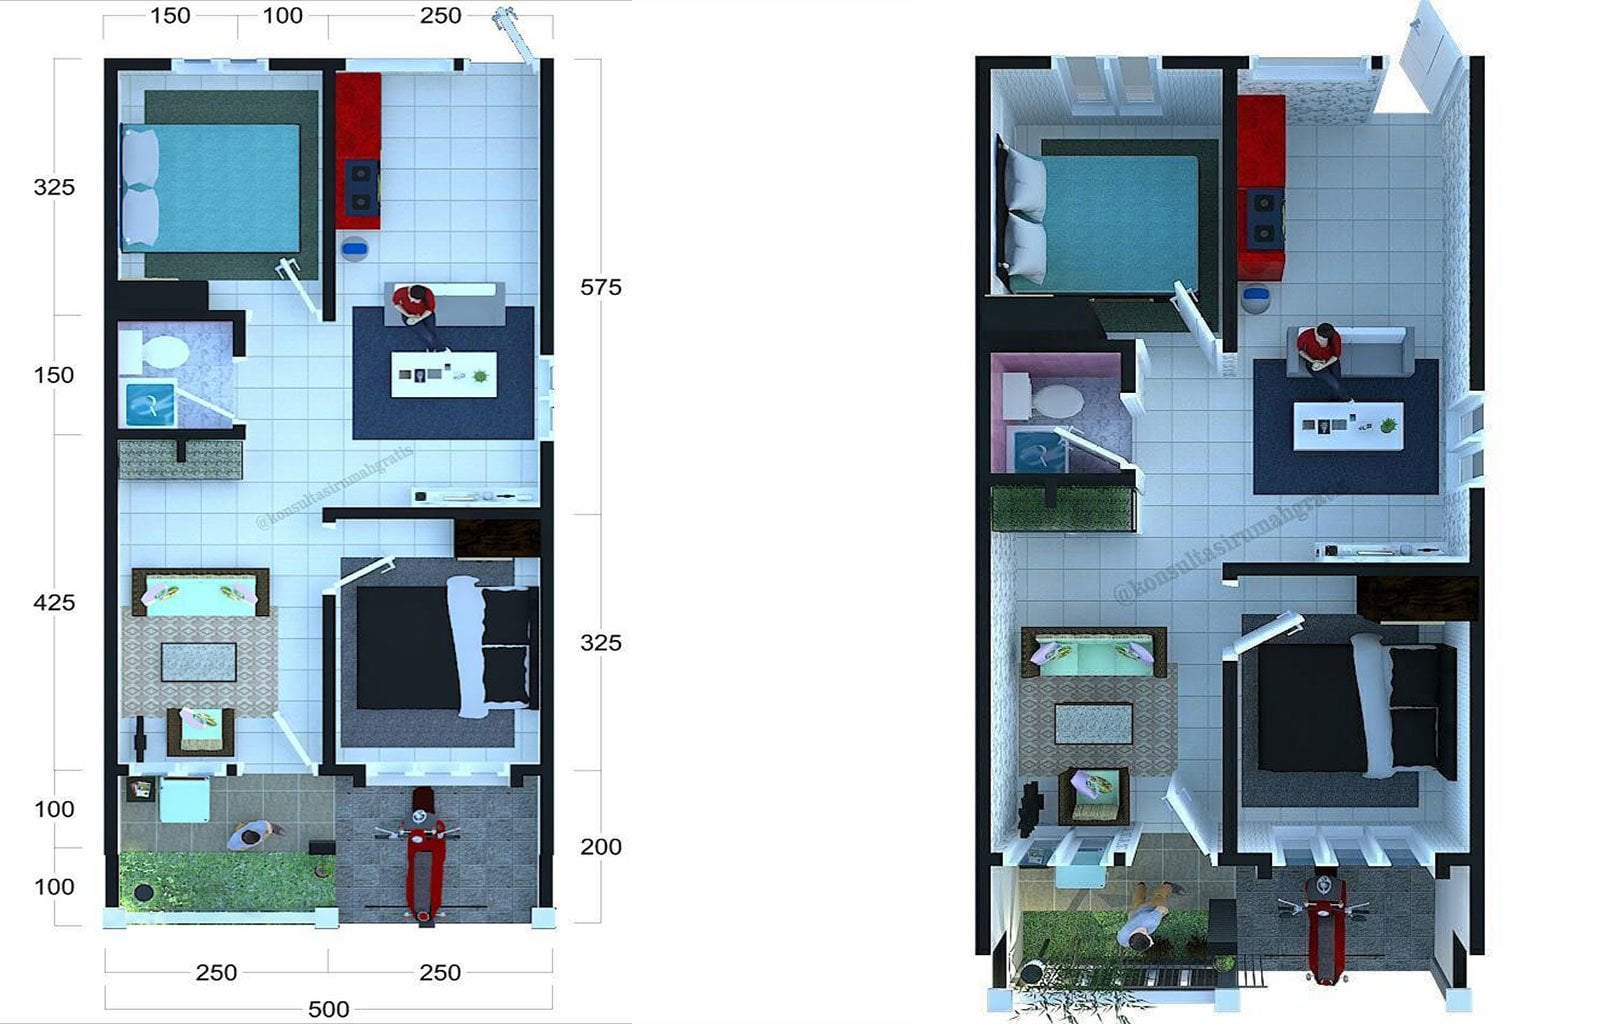 Menyenangkan Desain Rumah Mewah 6x10 78 Di Merancang Inspirasi Rumah oleh Desain Rumah Mewah 6x10